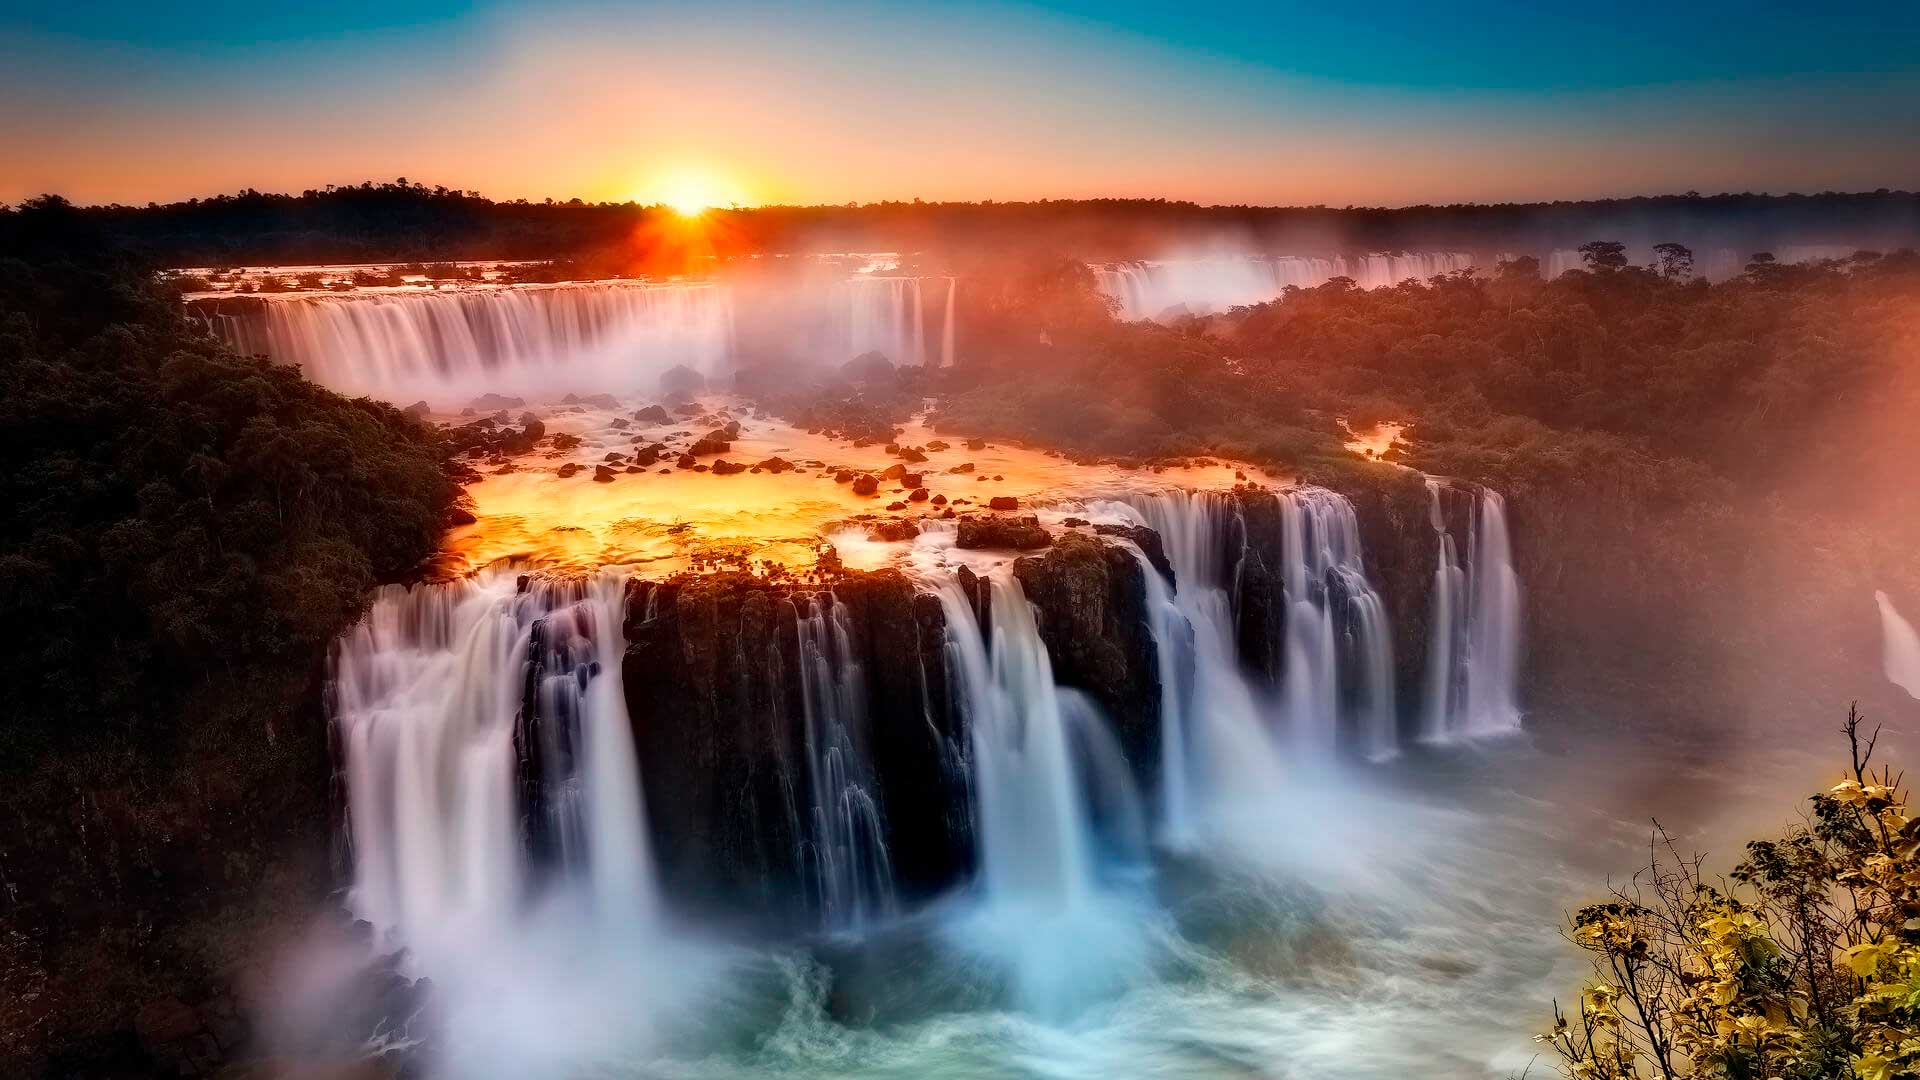 Parque Nacional do Iguaçu - Brasil